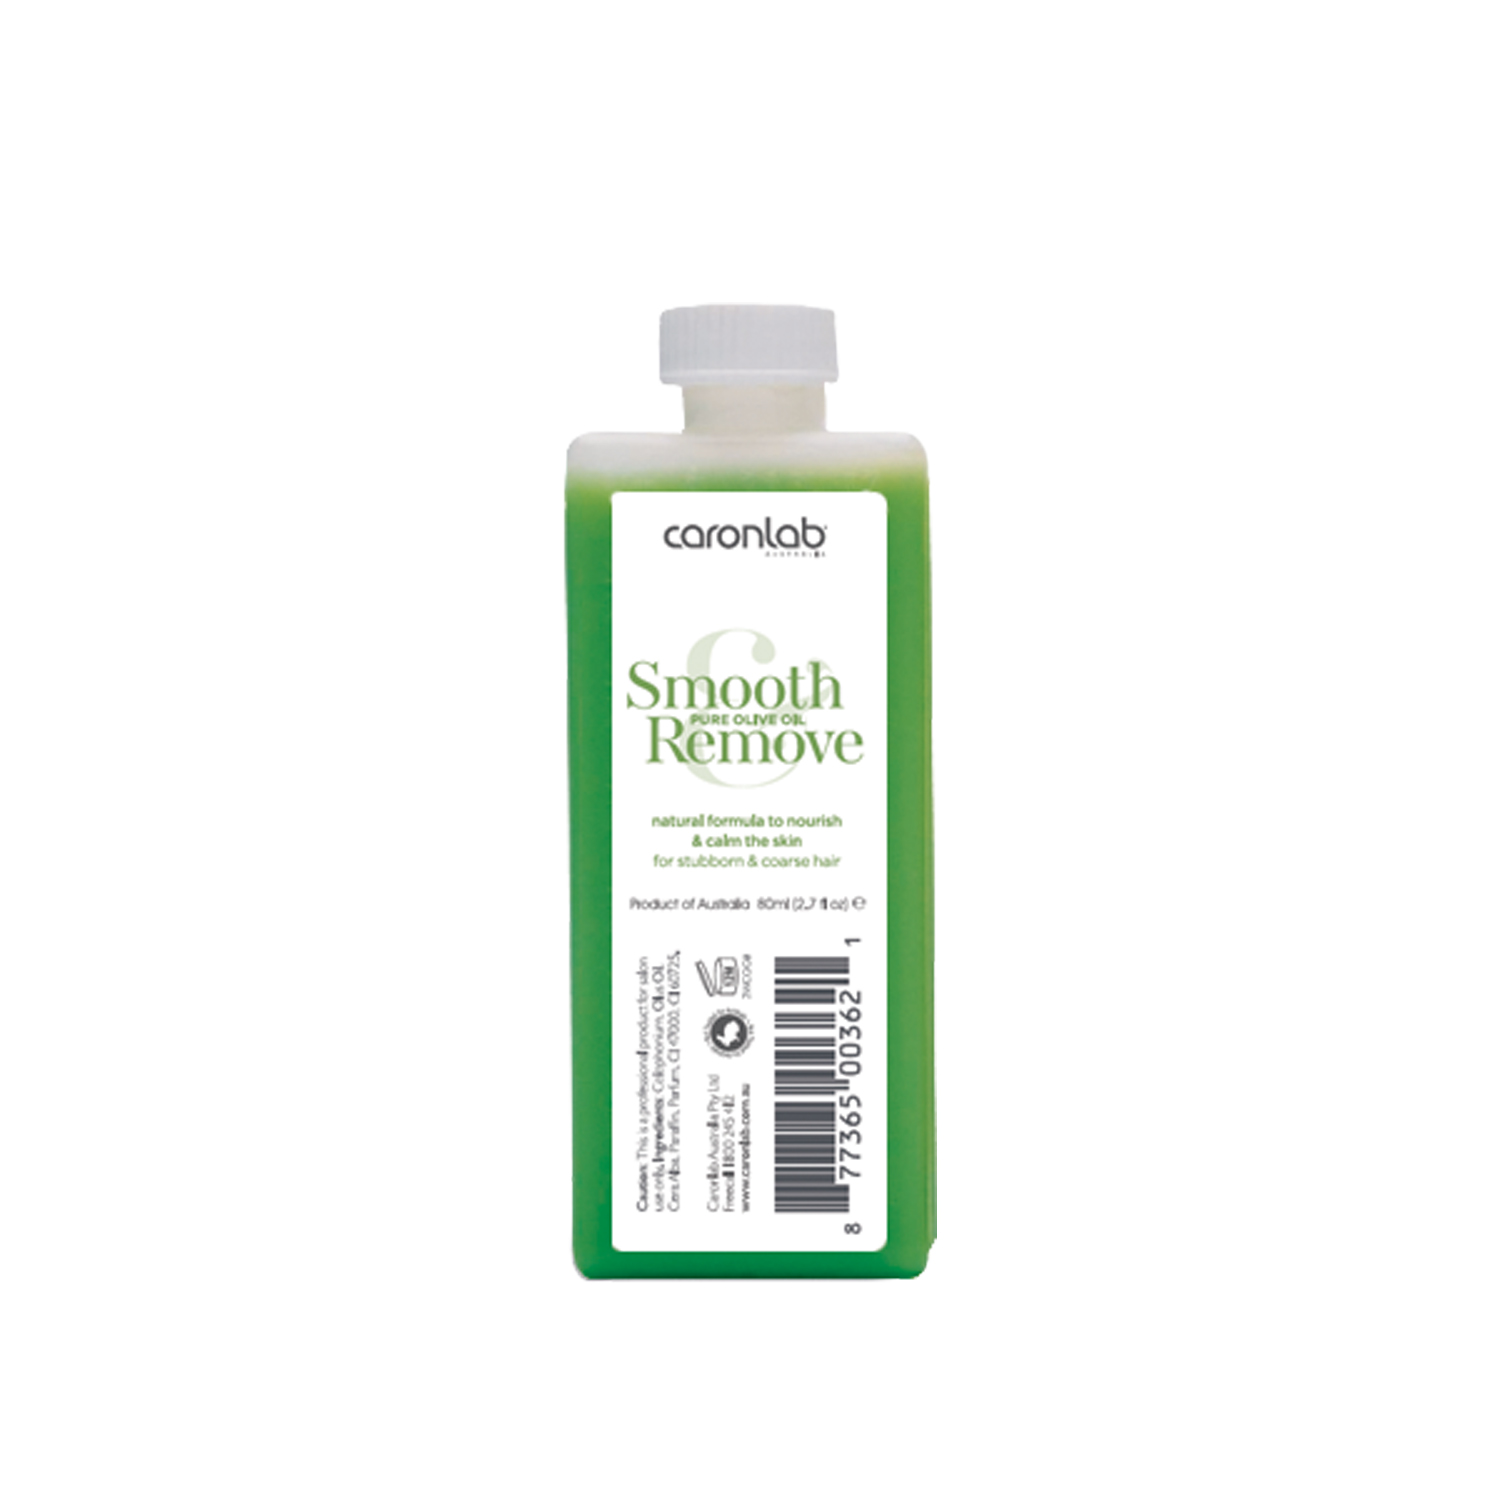 Caronlab — Натуральный воск с оливковым маслом для упрямых и жестких волос, картридж